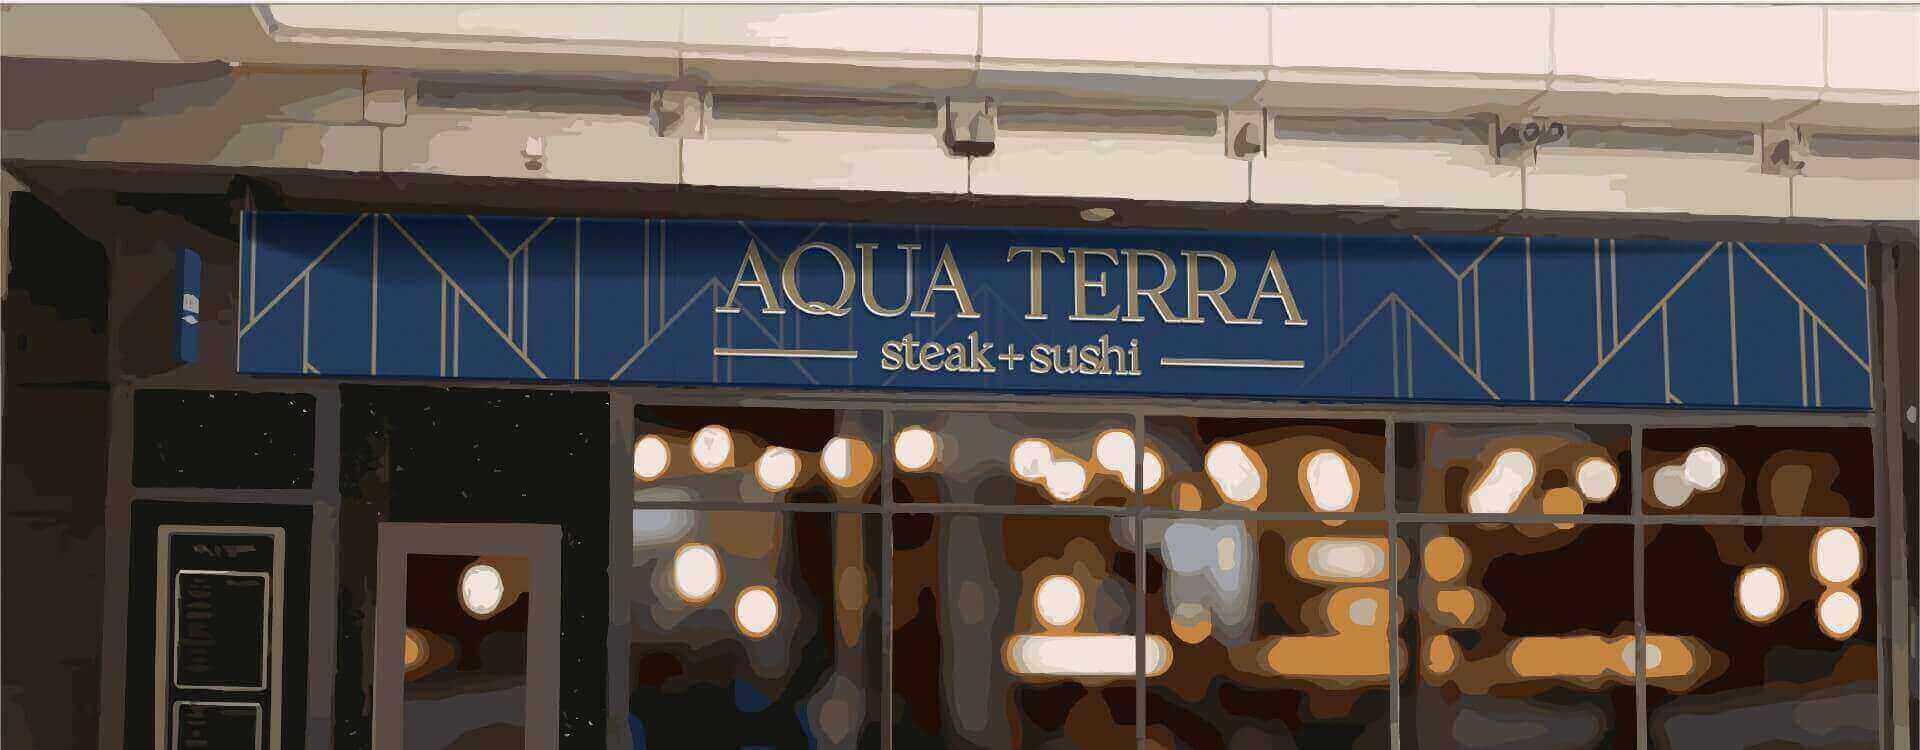 Aqua Terra Storefront